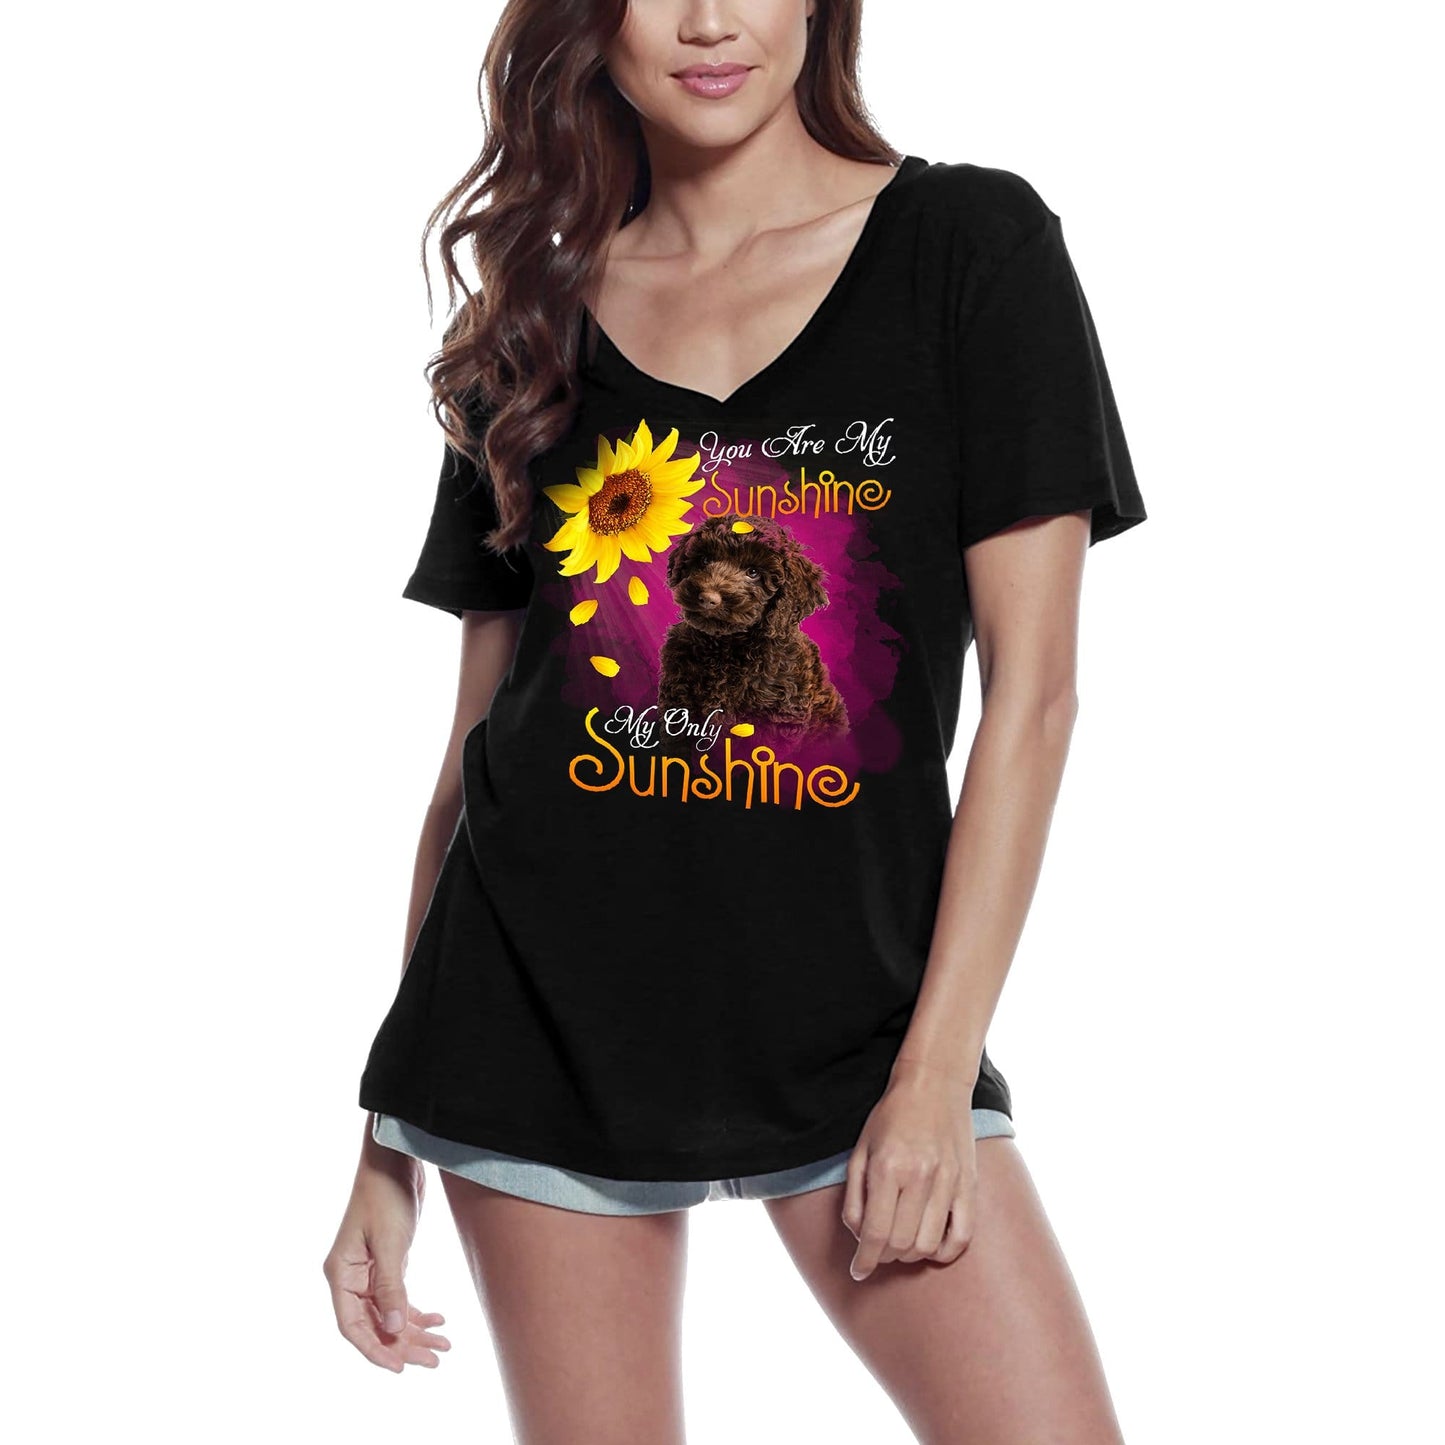 ULTRABASIC Women's V-Neck T-Shirt My Only Sunshine - Poodle - Vintage Shirt